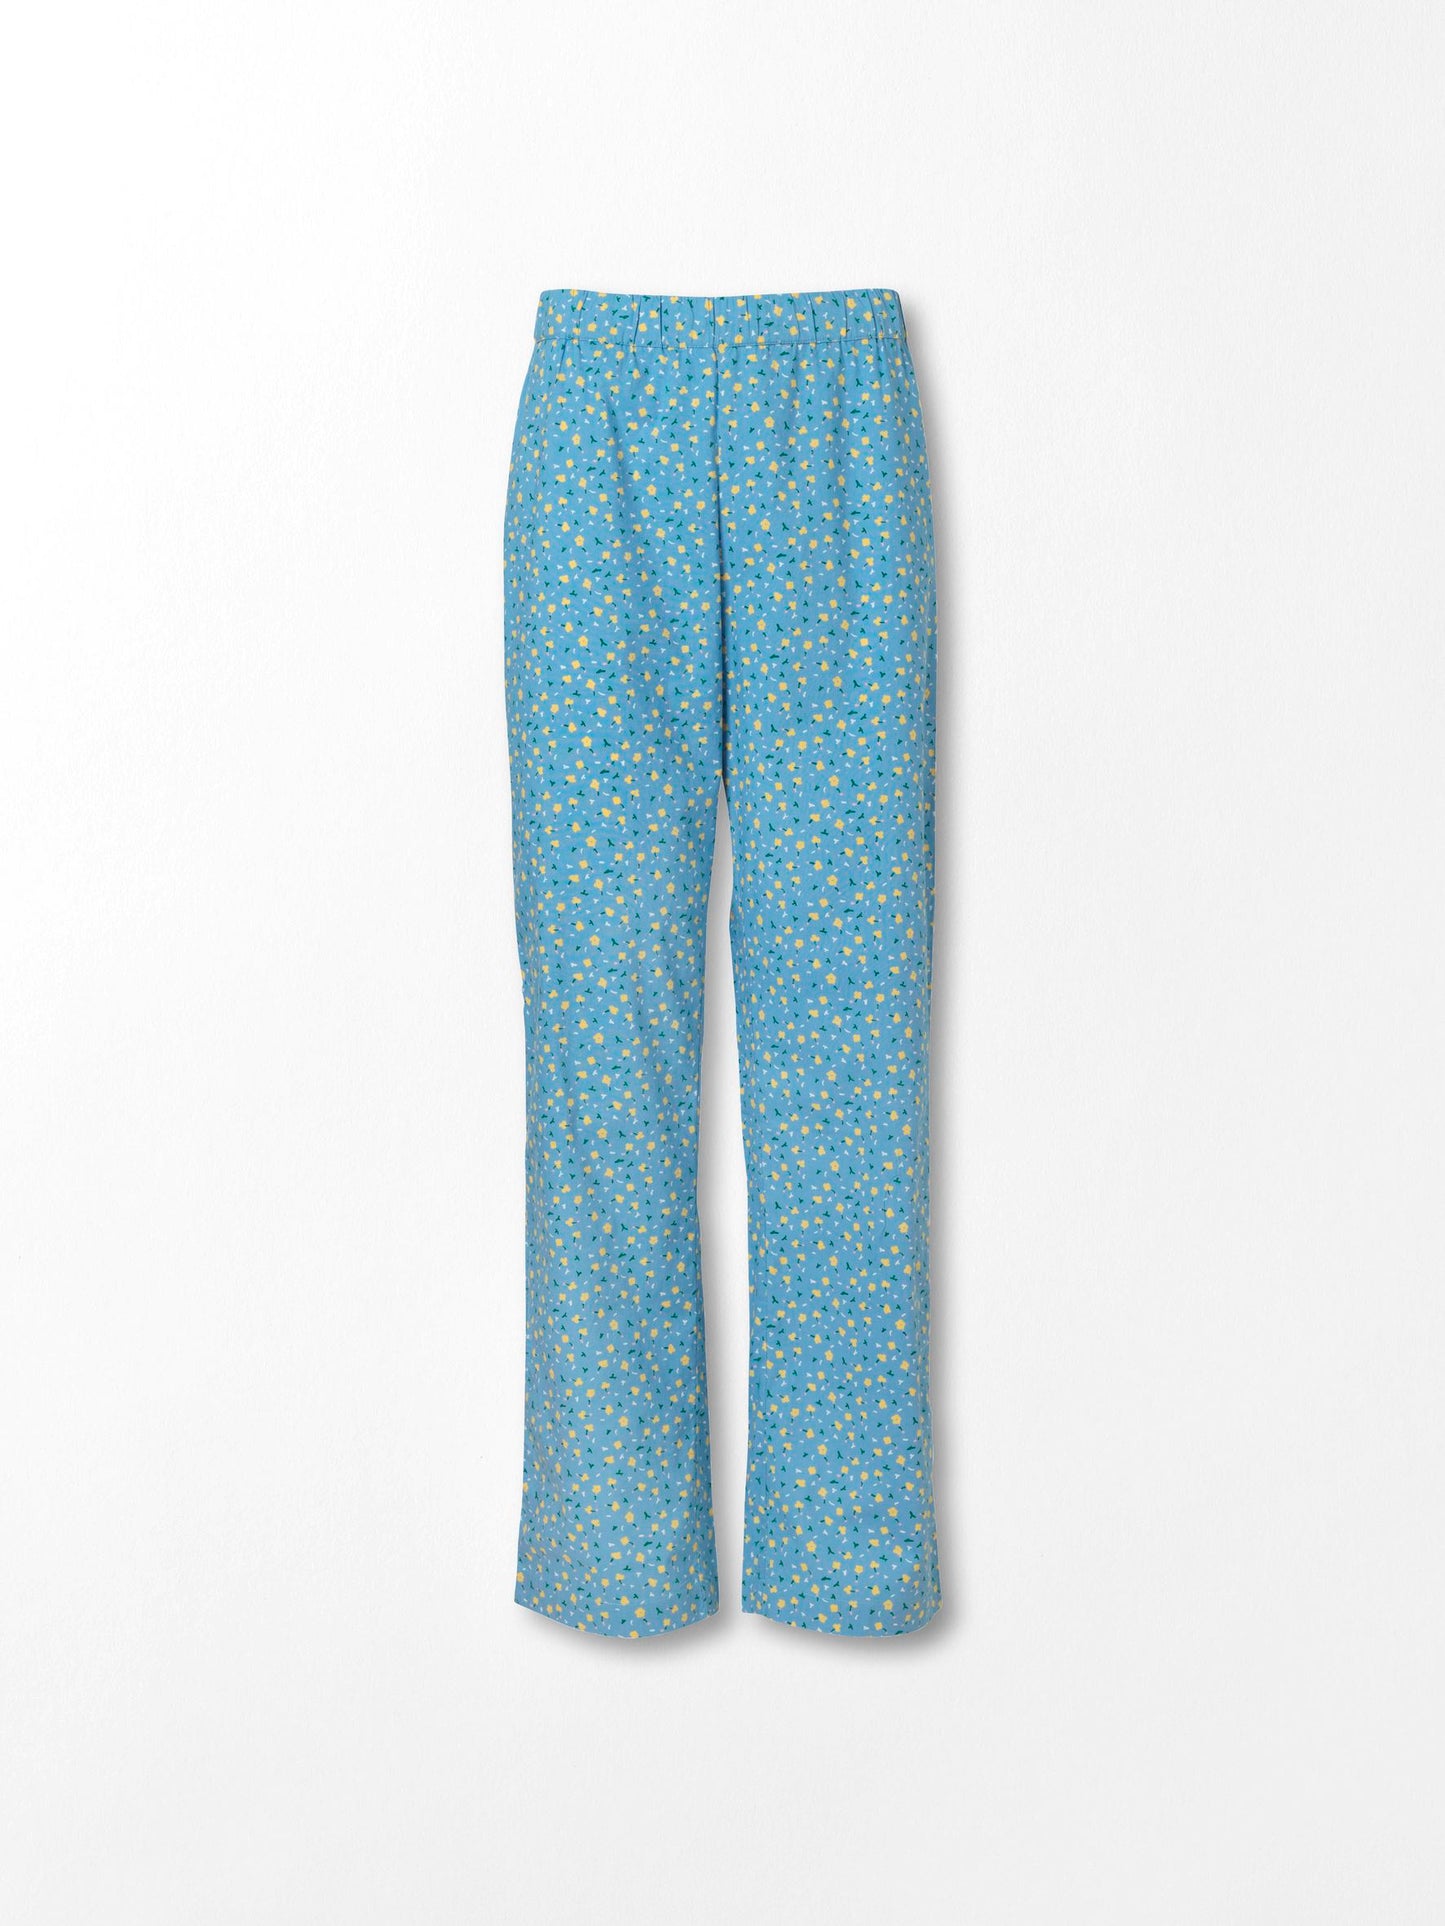 Becksöndergaard, Picola Pyjamas Set - Provincial Blue, archive, sale, sale, archive